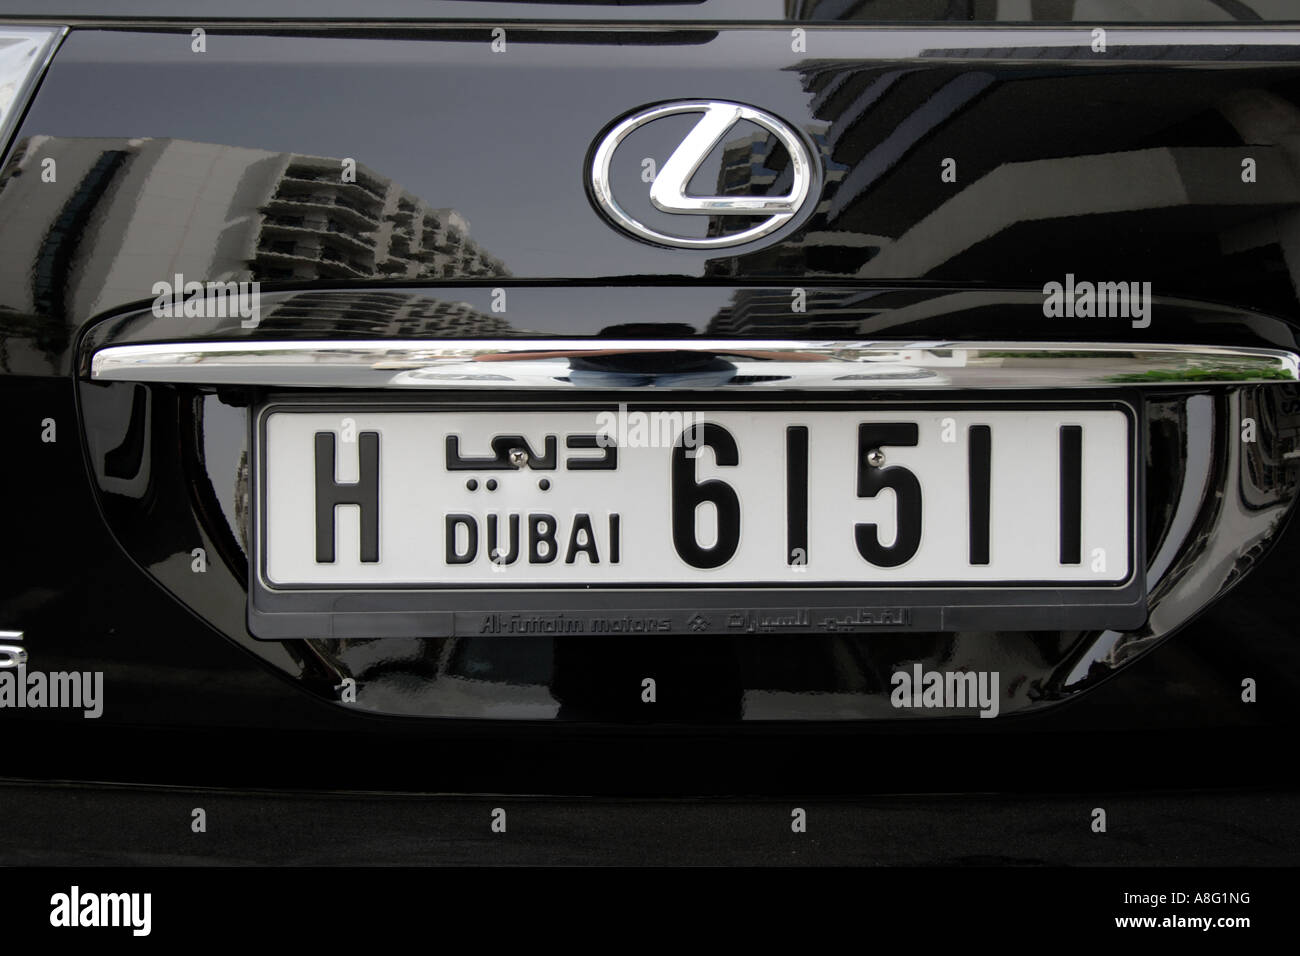 Dubai-VAE Luxuswagen Lexus off Road-Kfz-Kennzeichen. Foto: Willy Matheisl Stockfoto